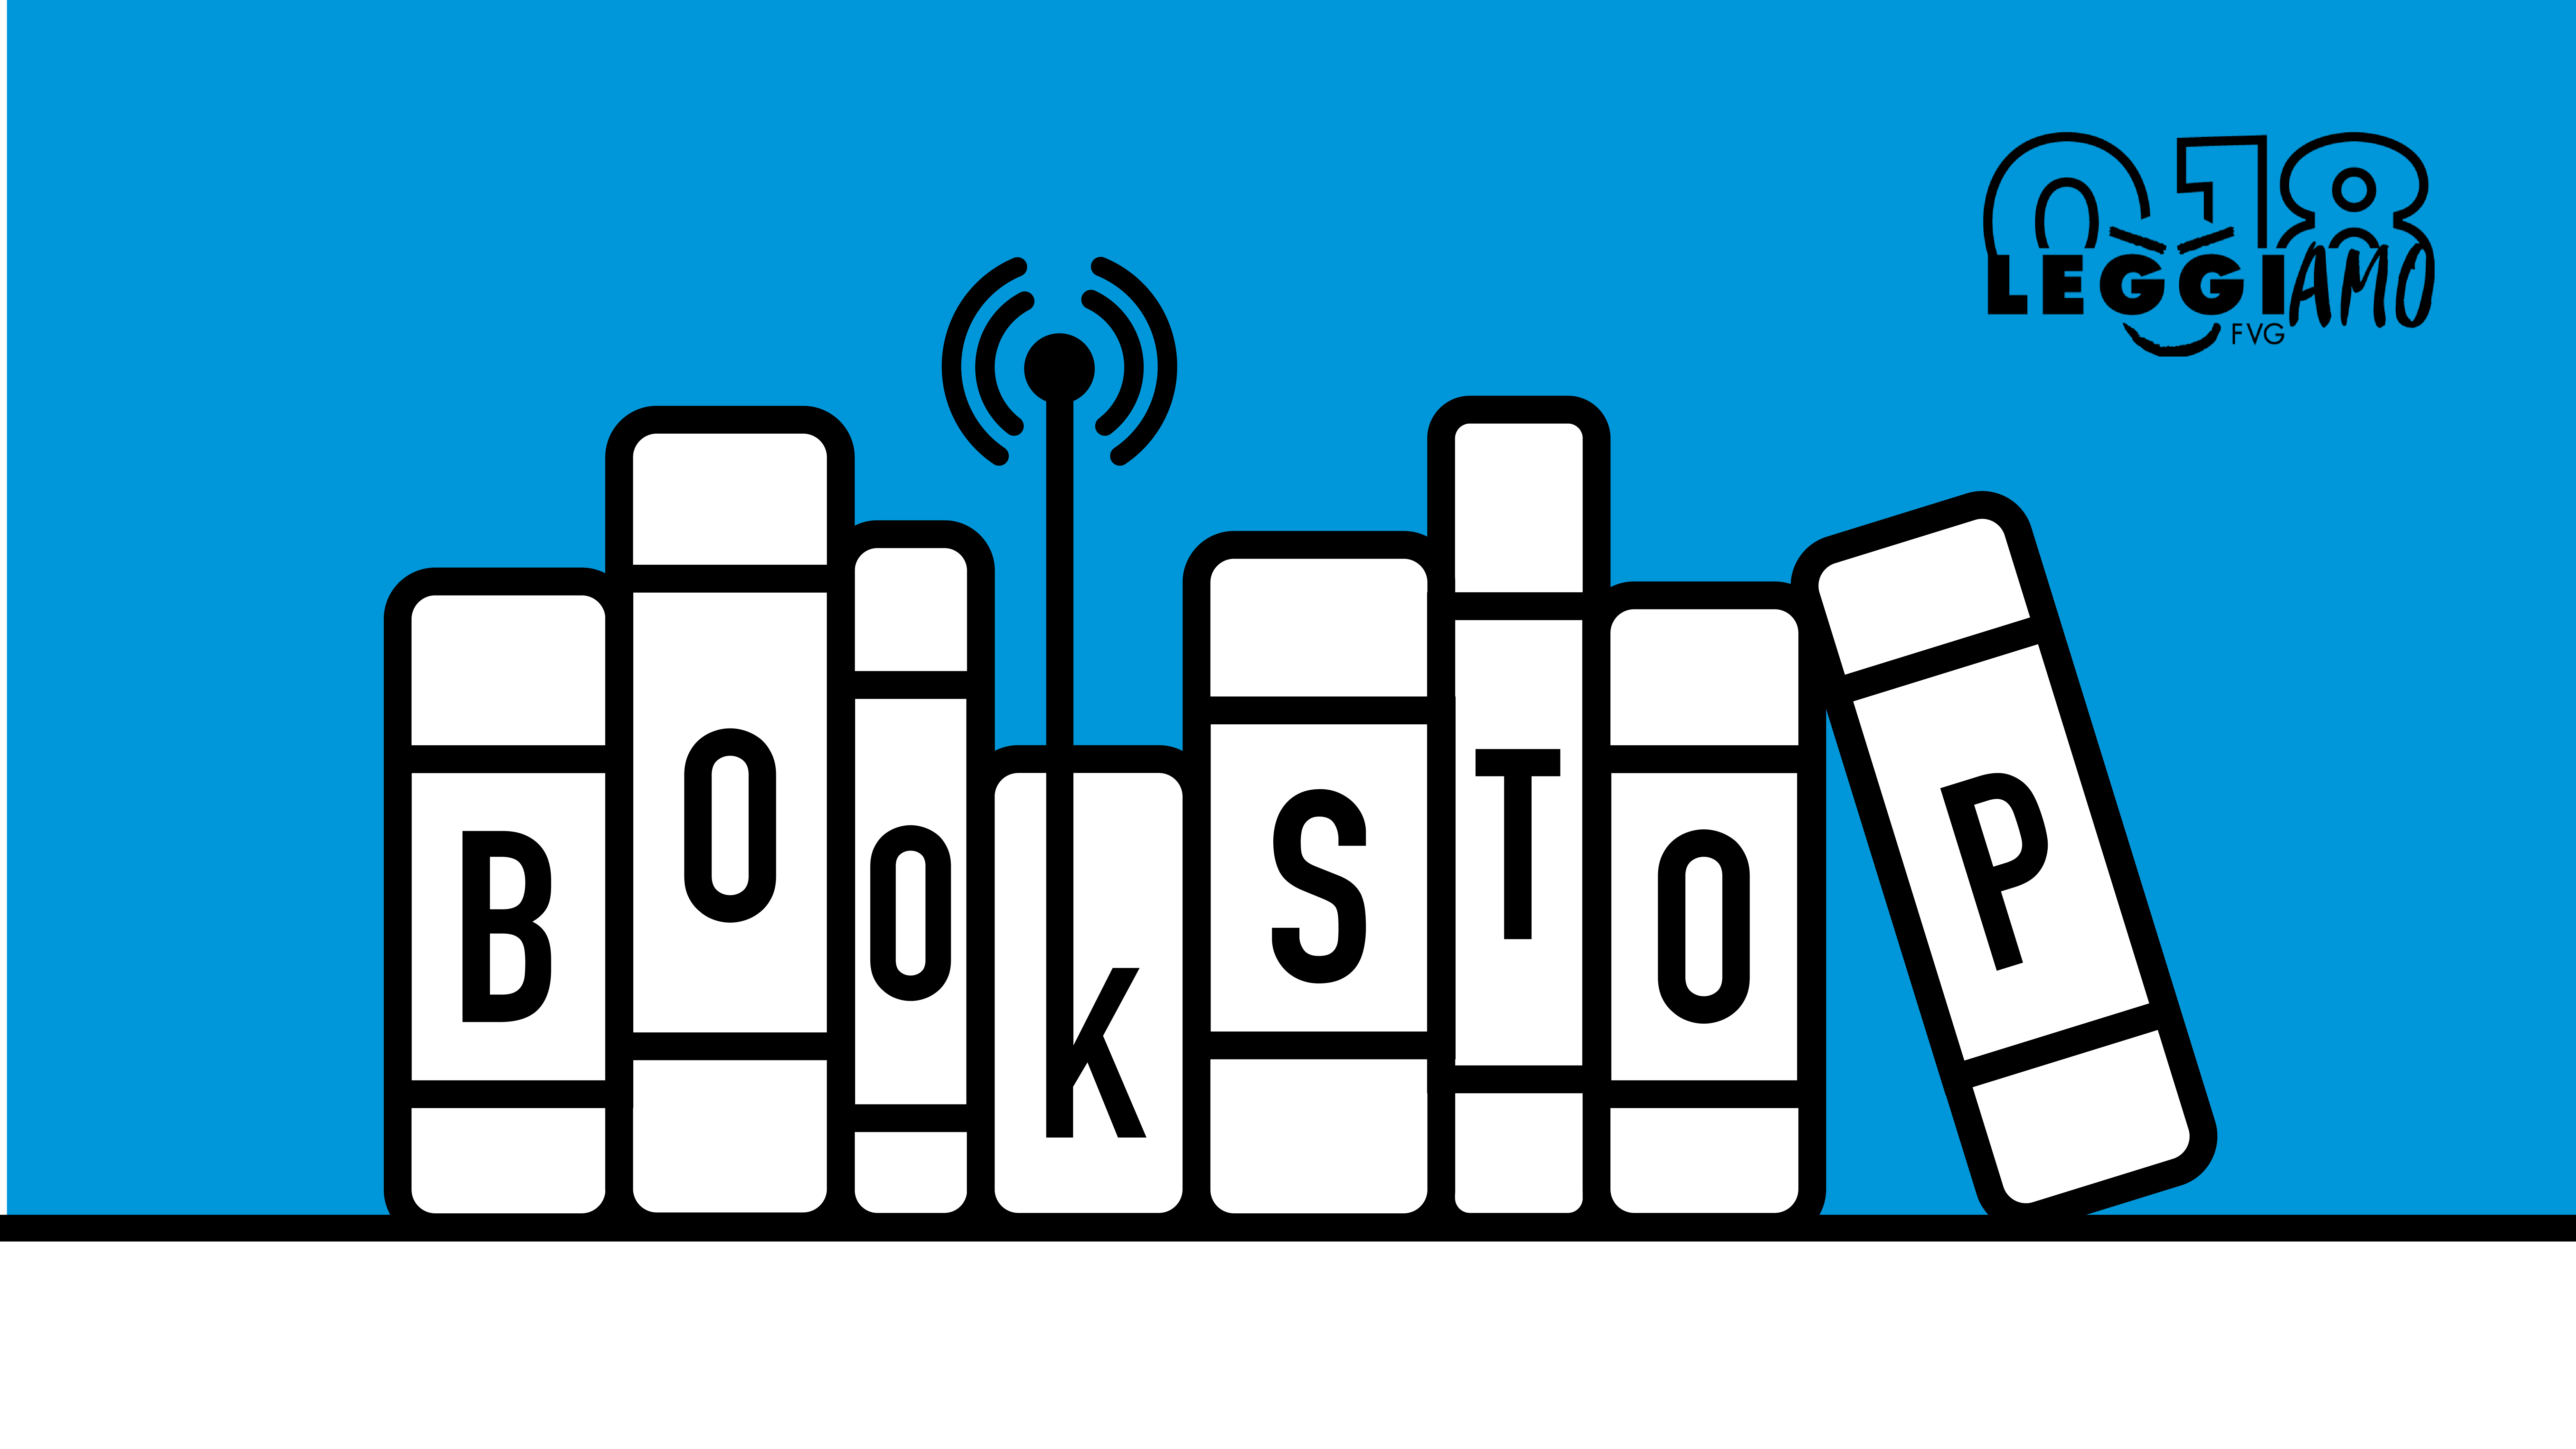 Radio LeggiAMO: online il nuovo programma BookStop!